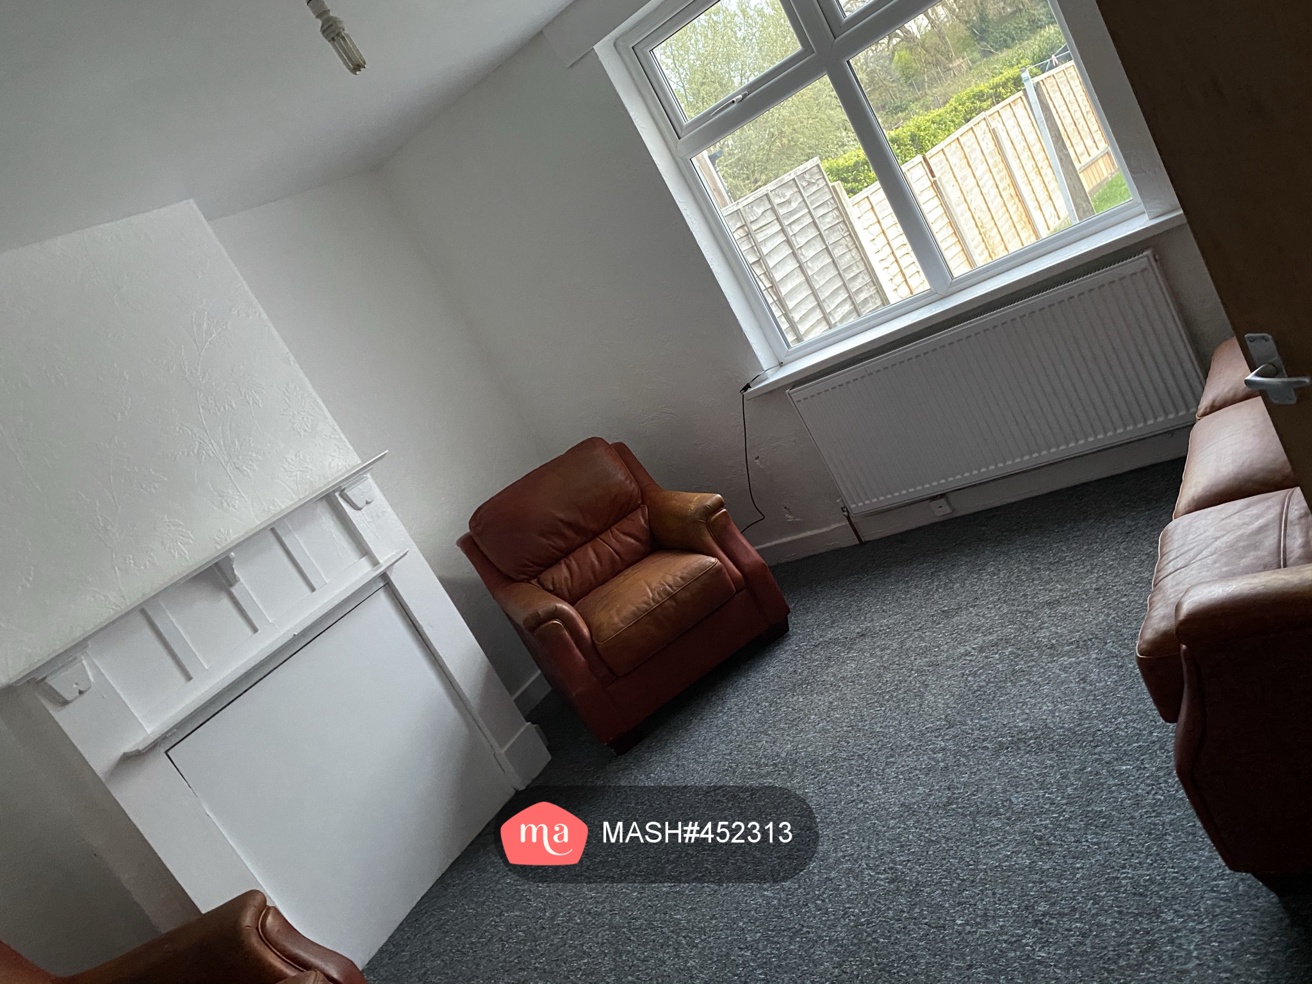 4 Bedroom Semi-detached to rent in Birmingham - Mashroom